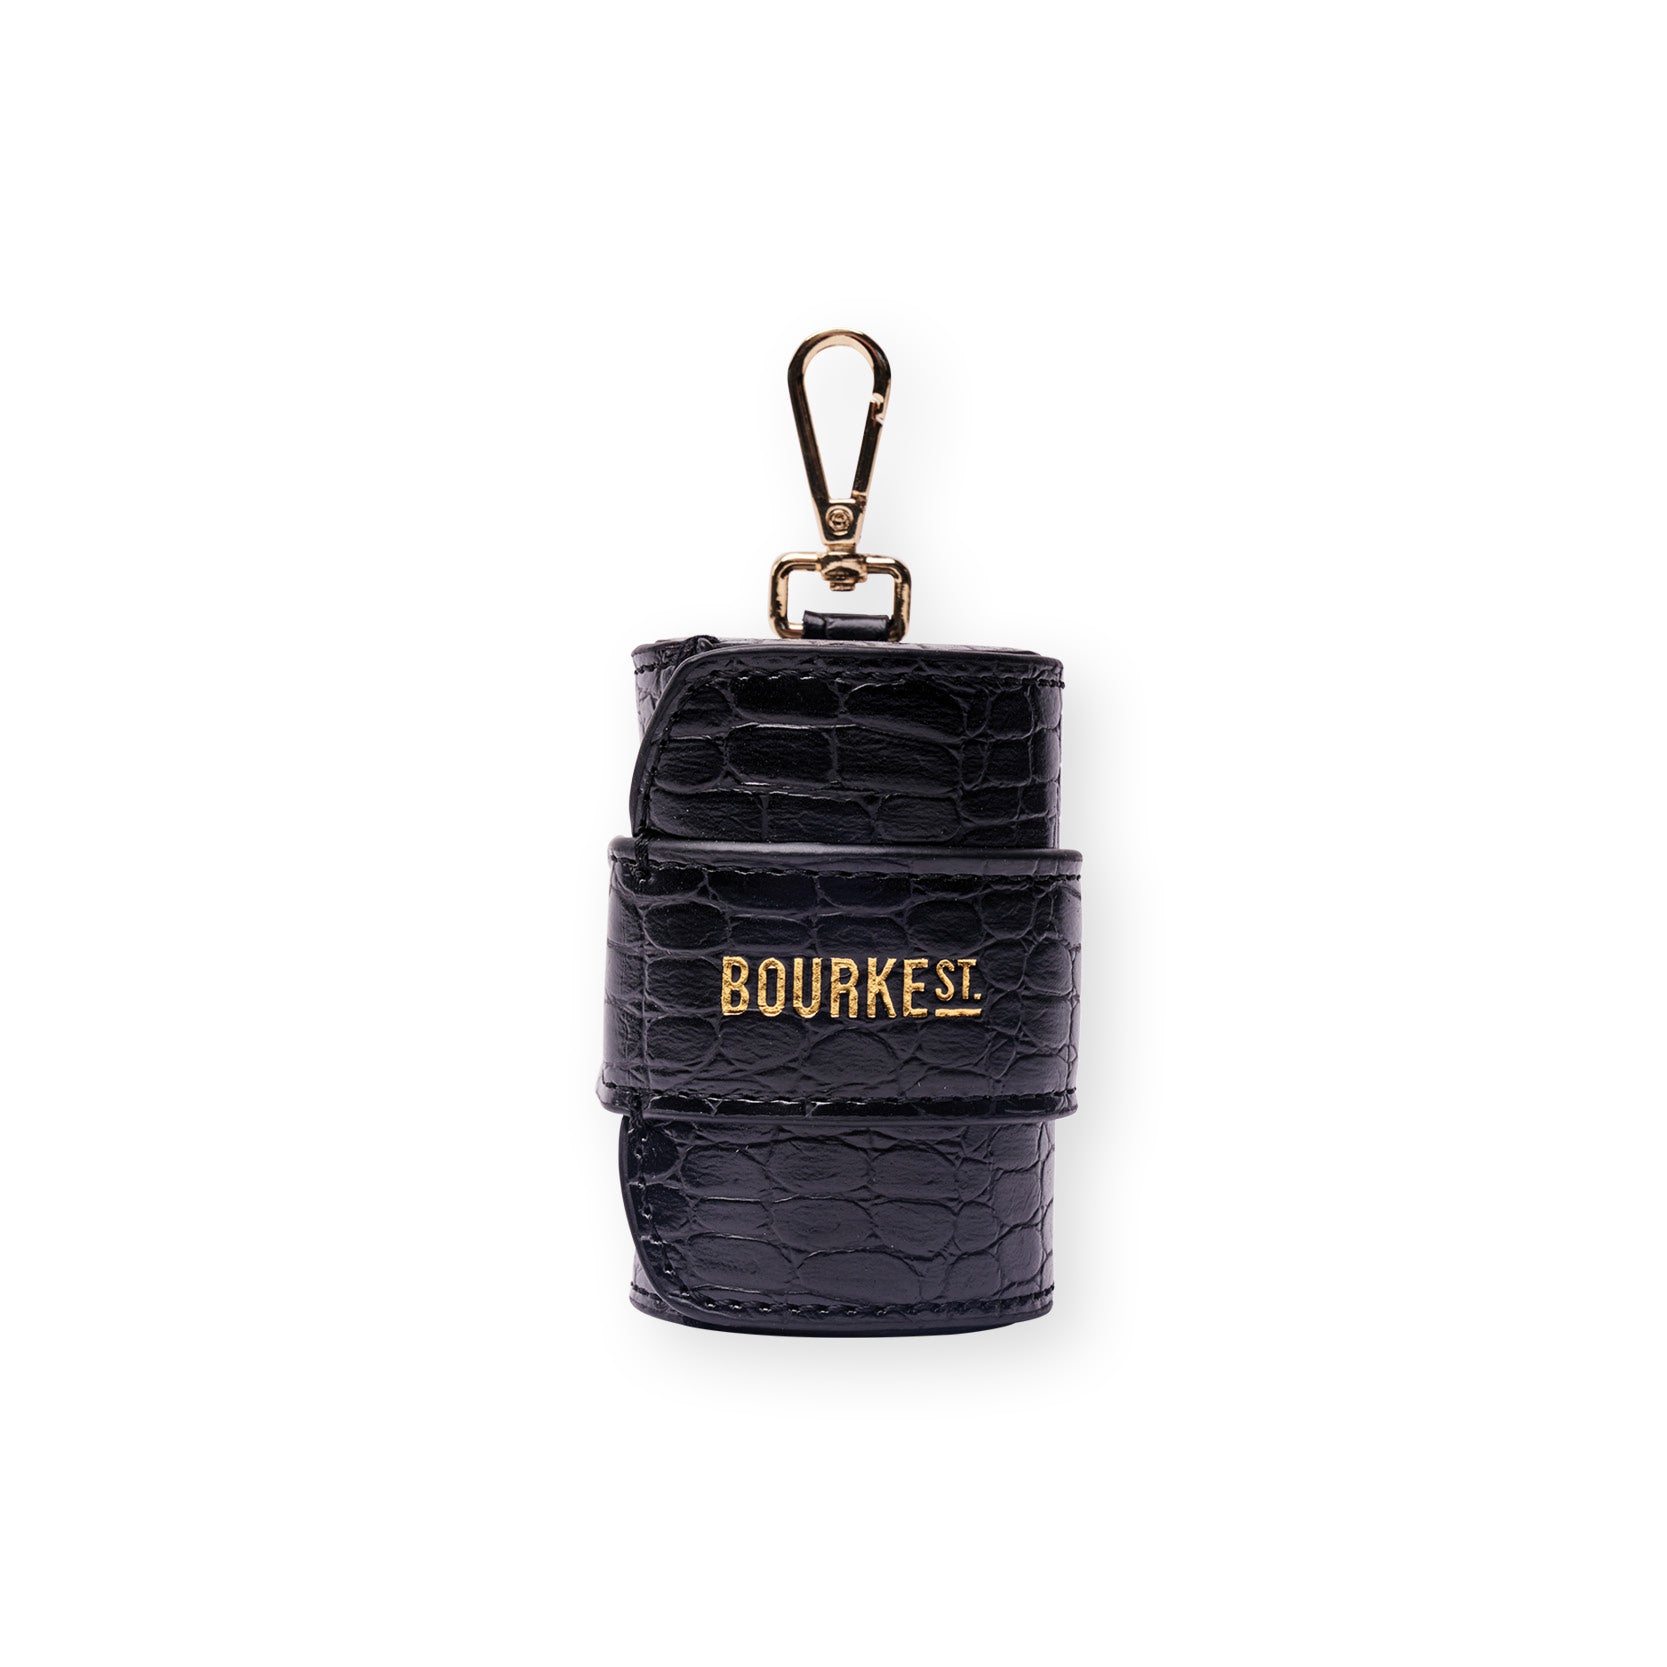 Bourke St the Label - Waste Bag Holder